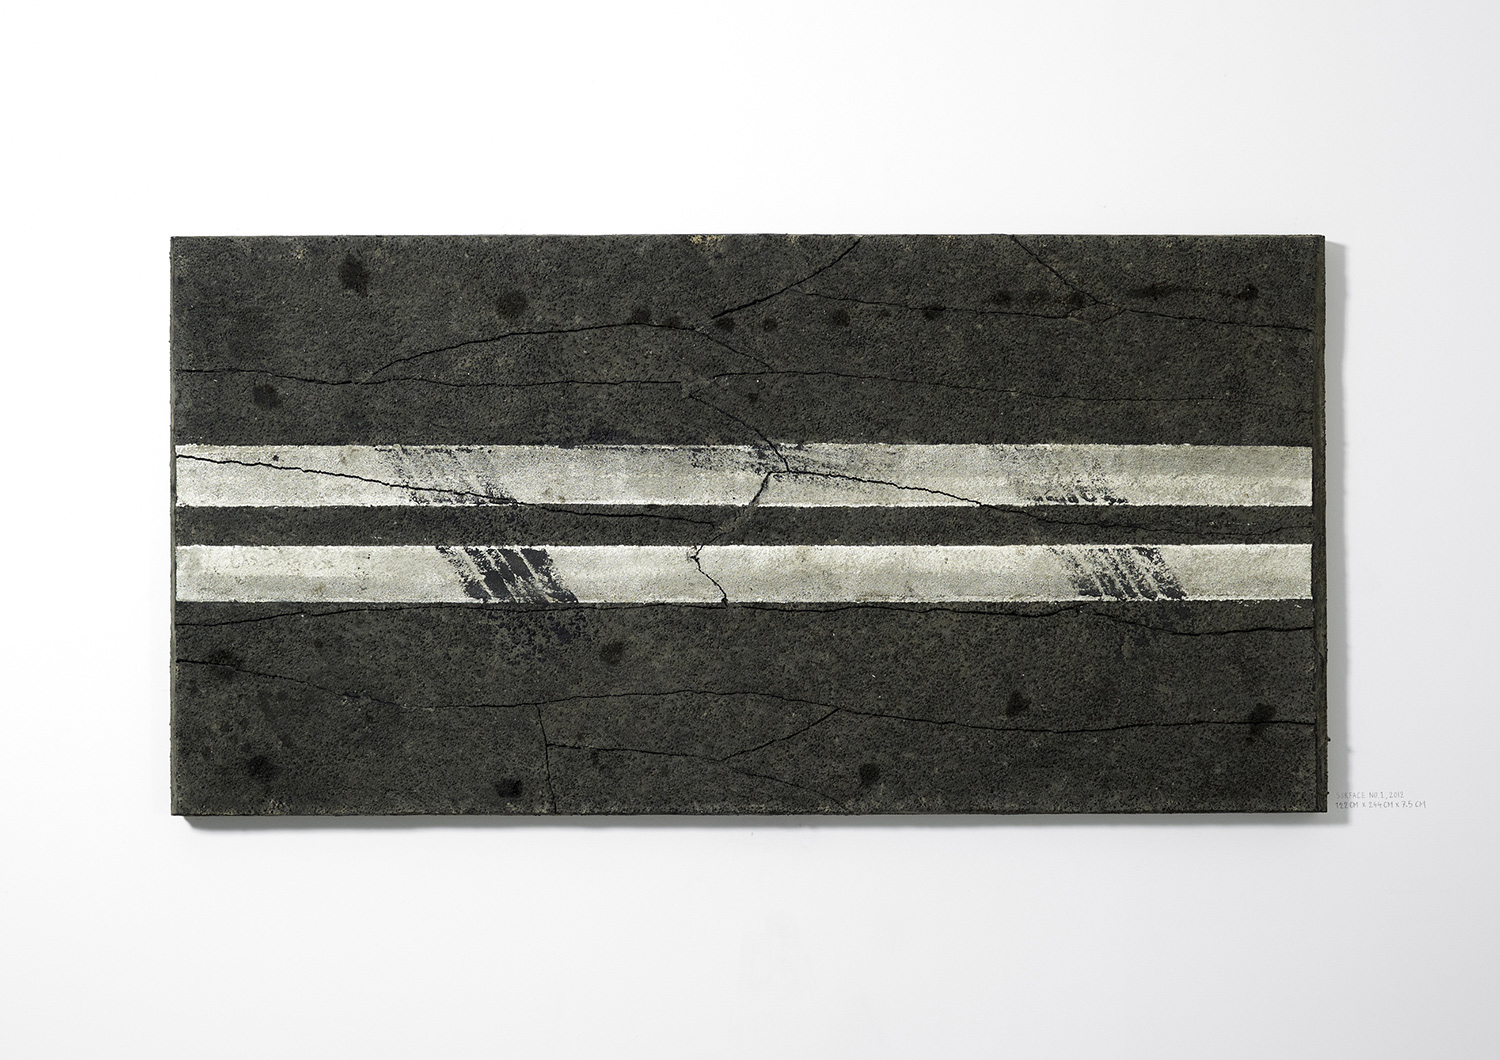   Surface No. 1 , 2012  122 cm x 244 cm x 7.5 cm   